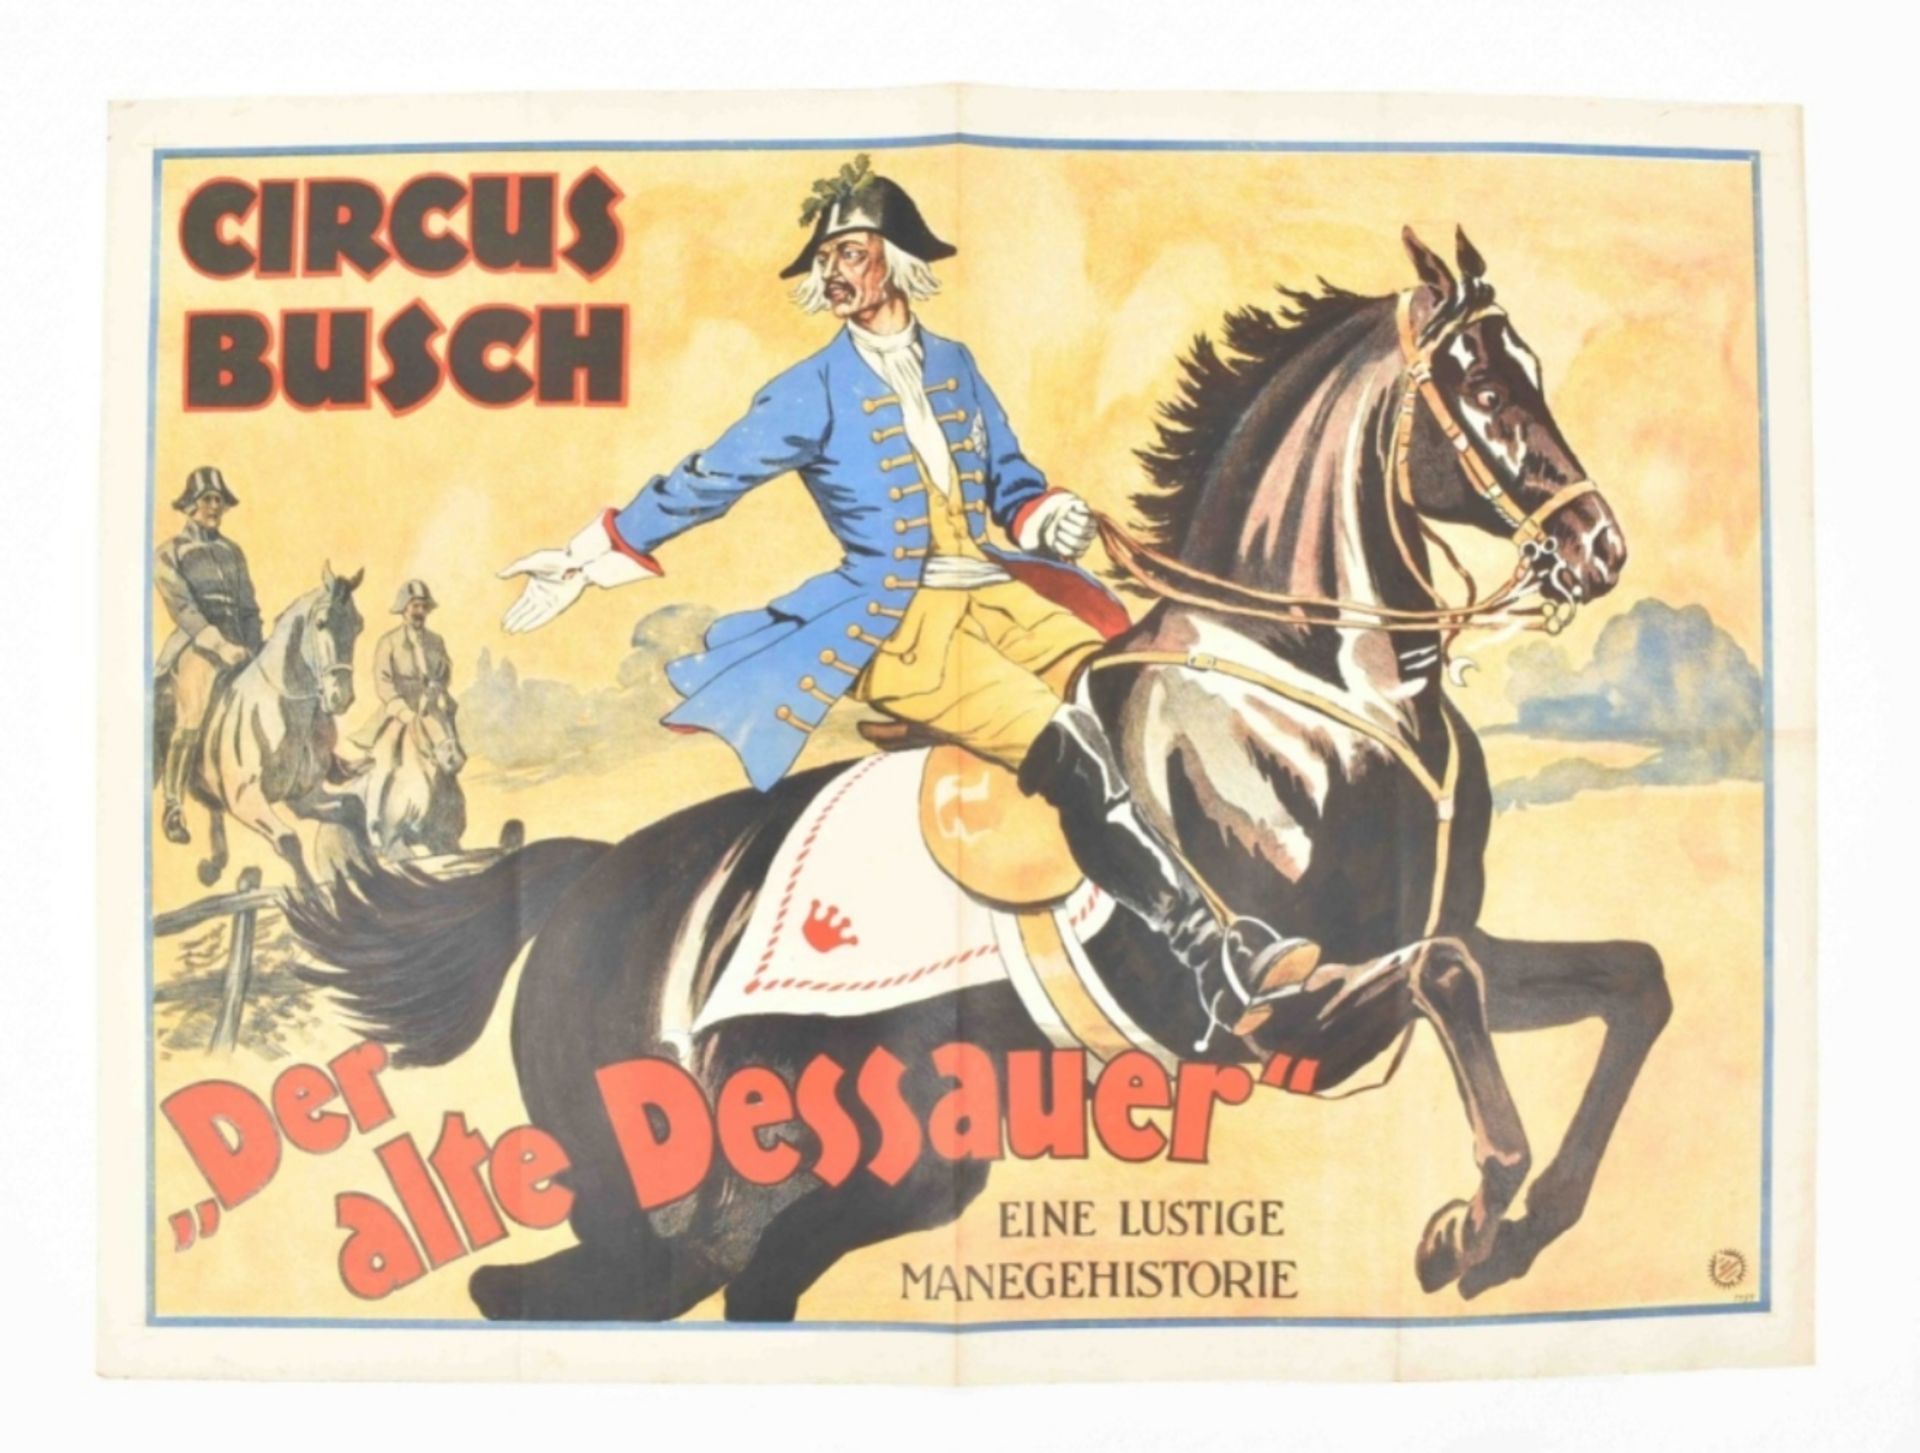 [Animal Dressage] Circus Busch. Der alte Dressauer. Ein lustige manegehistorie. Friedländer, 1925